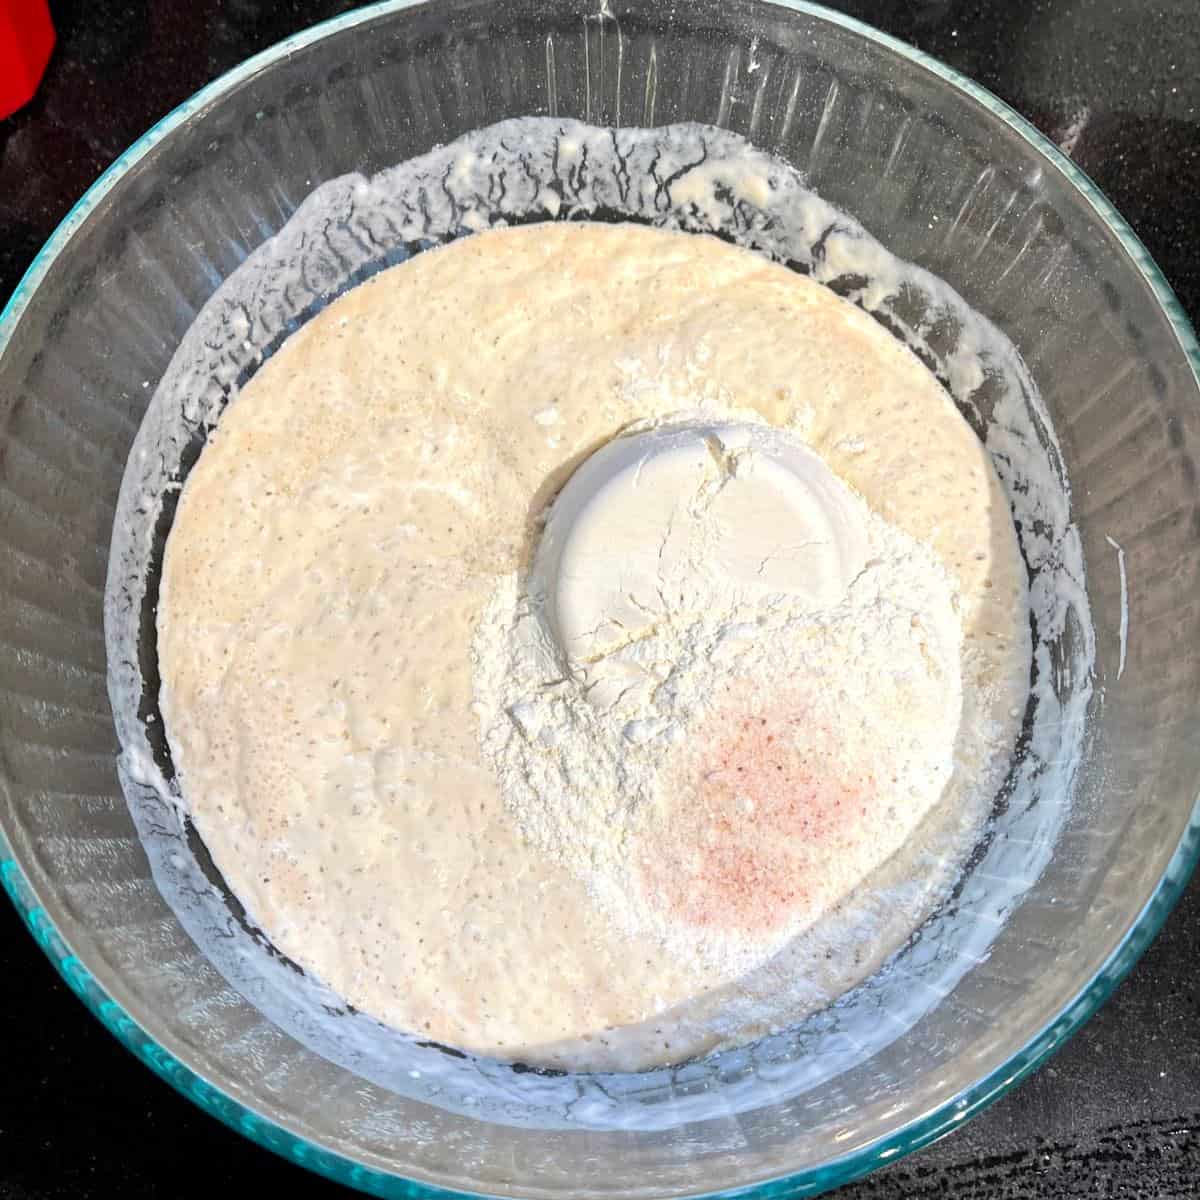 Flour and salt added to biga for Italian bread.